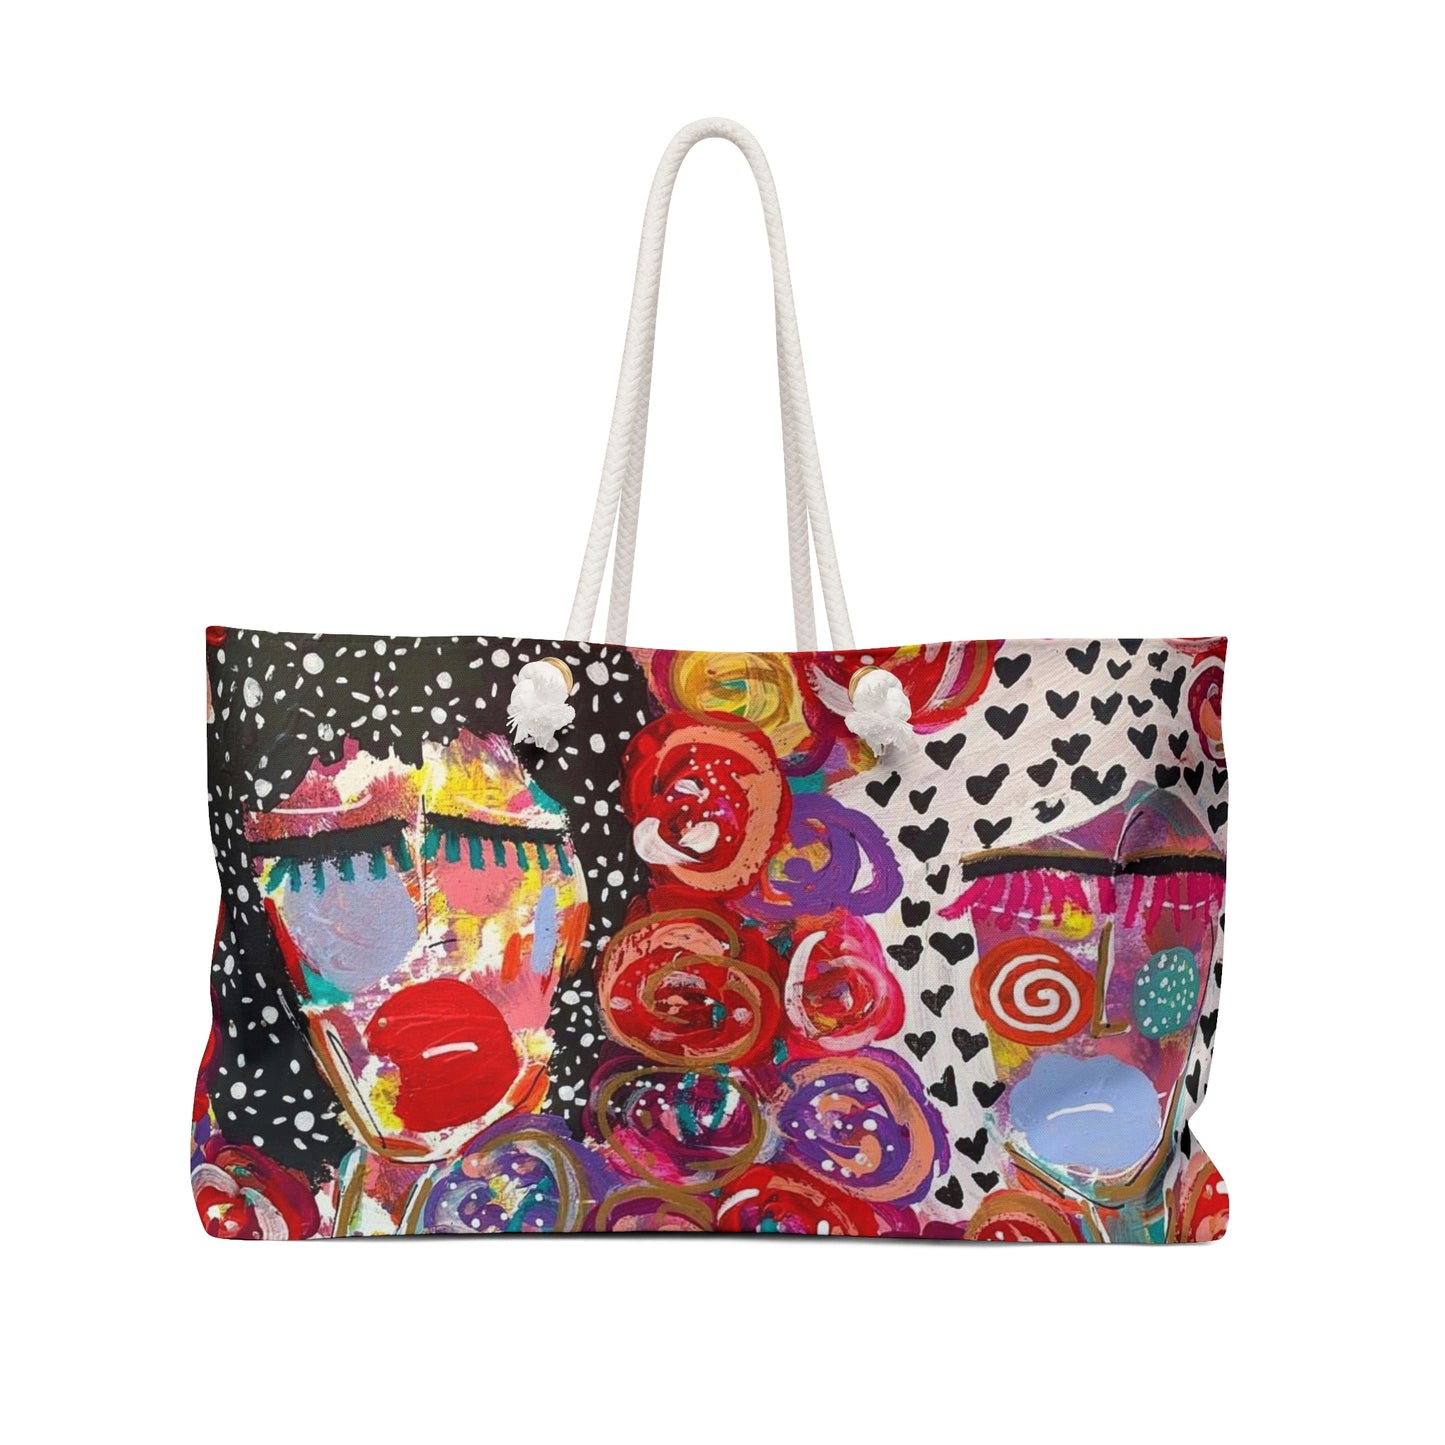 Friends + Flowers Girl Talk Art Weekender Bag